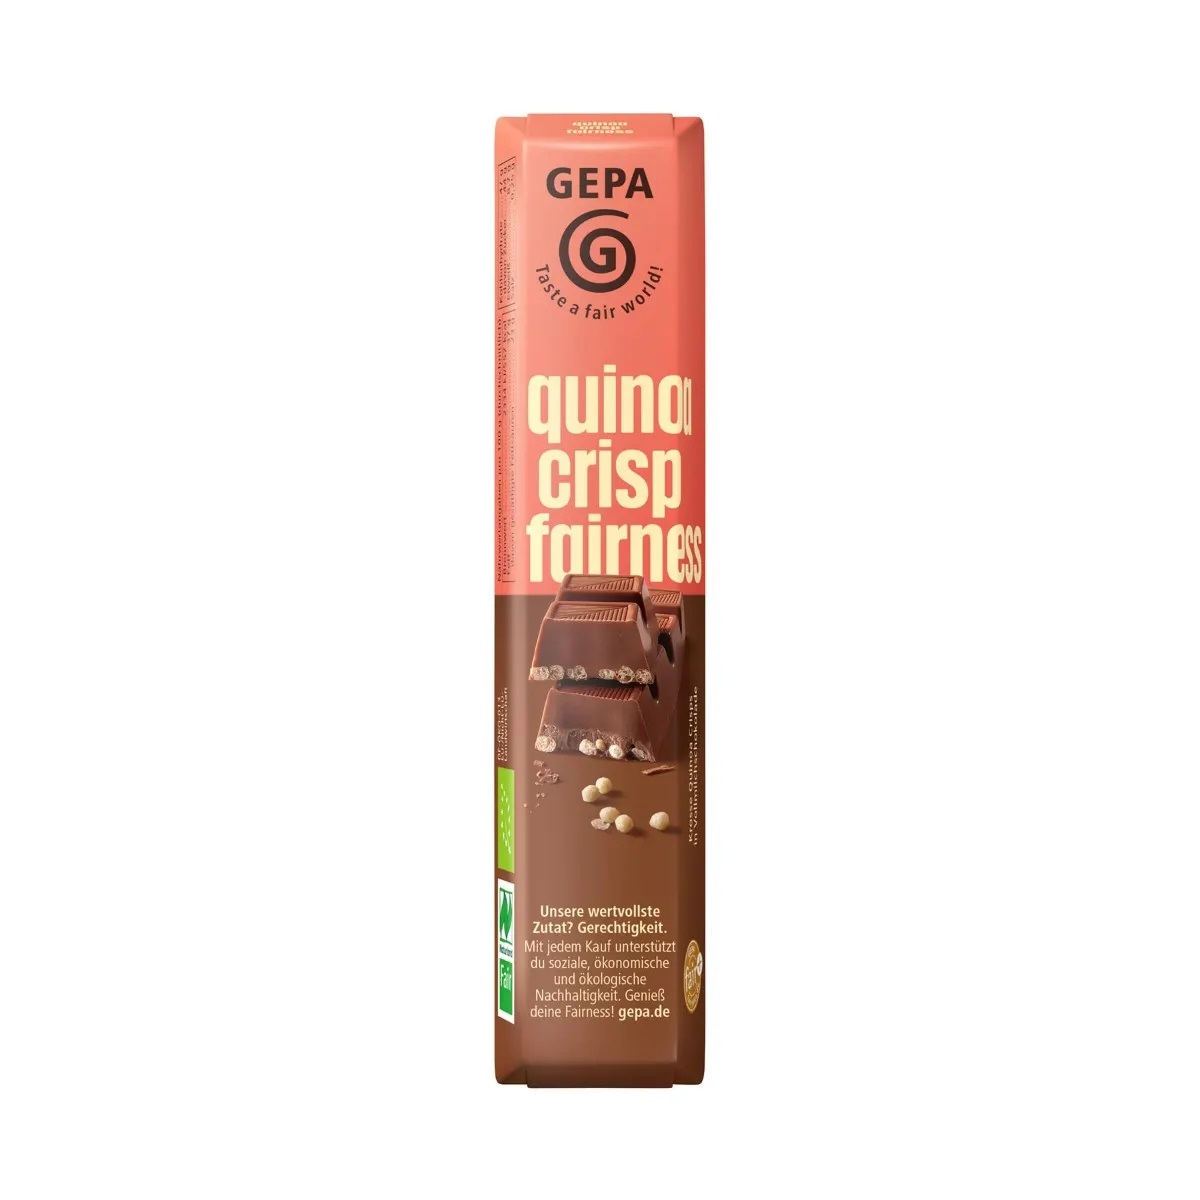 Fairness quinoa crisp, 45 g, BIO Naturland Fair zertifiziert